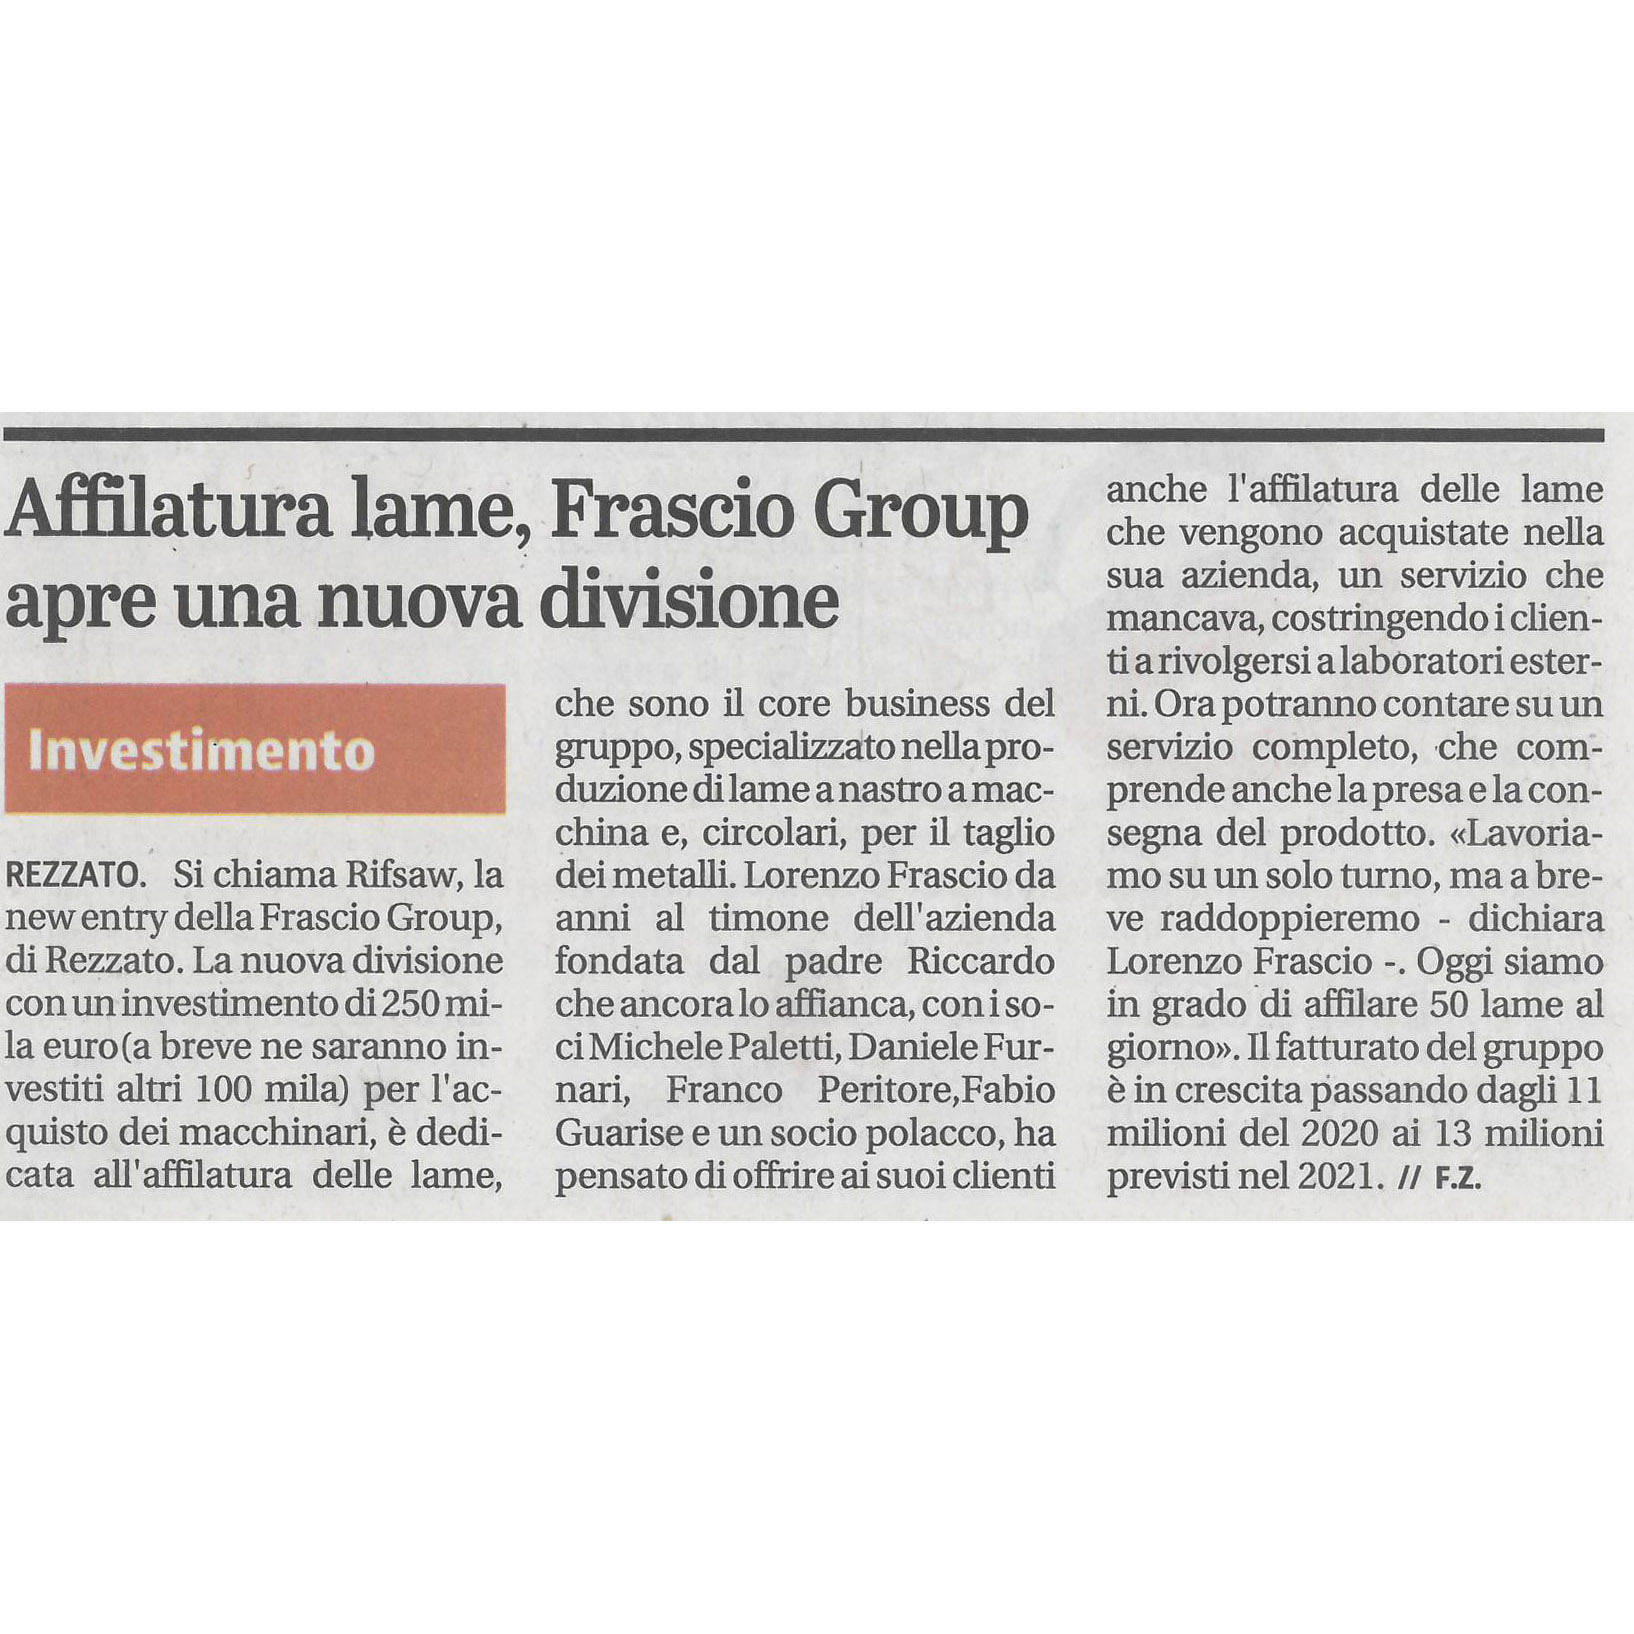 Affilatura lame, Frascio Group apre una nuova divisione